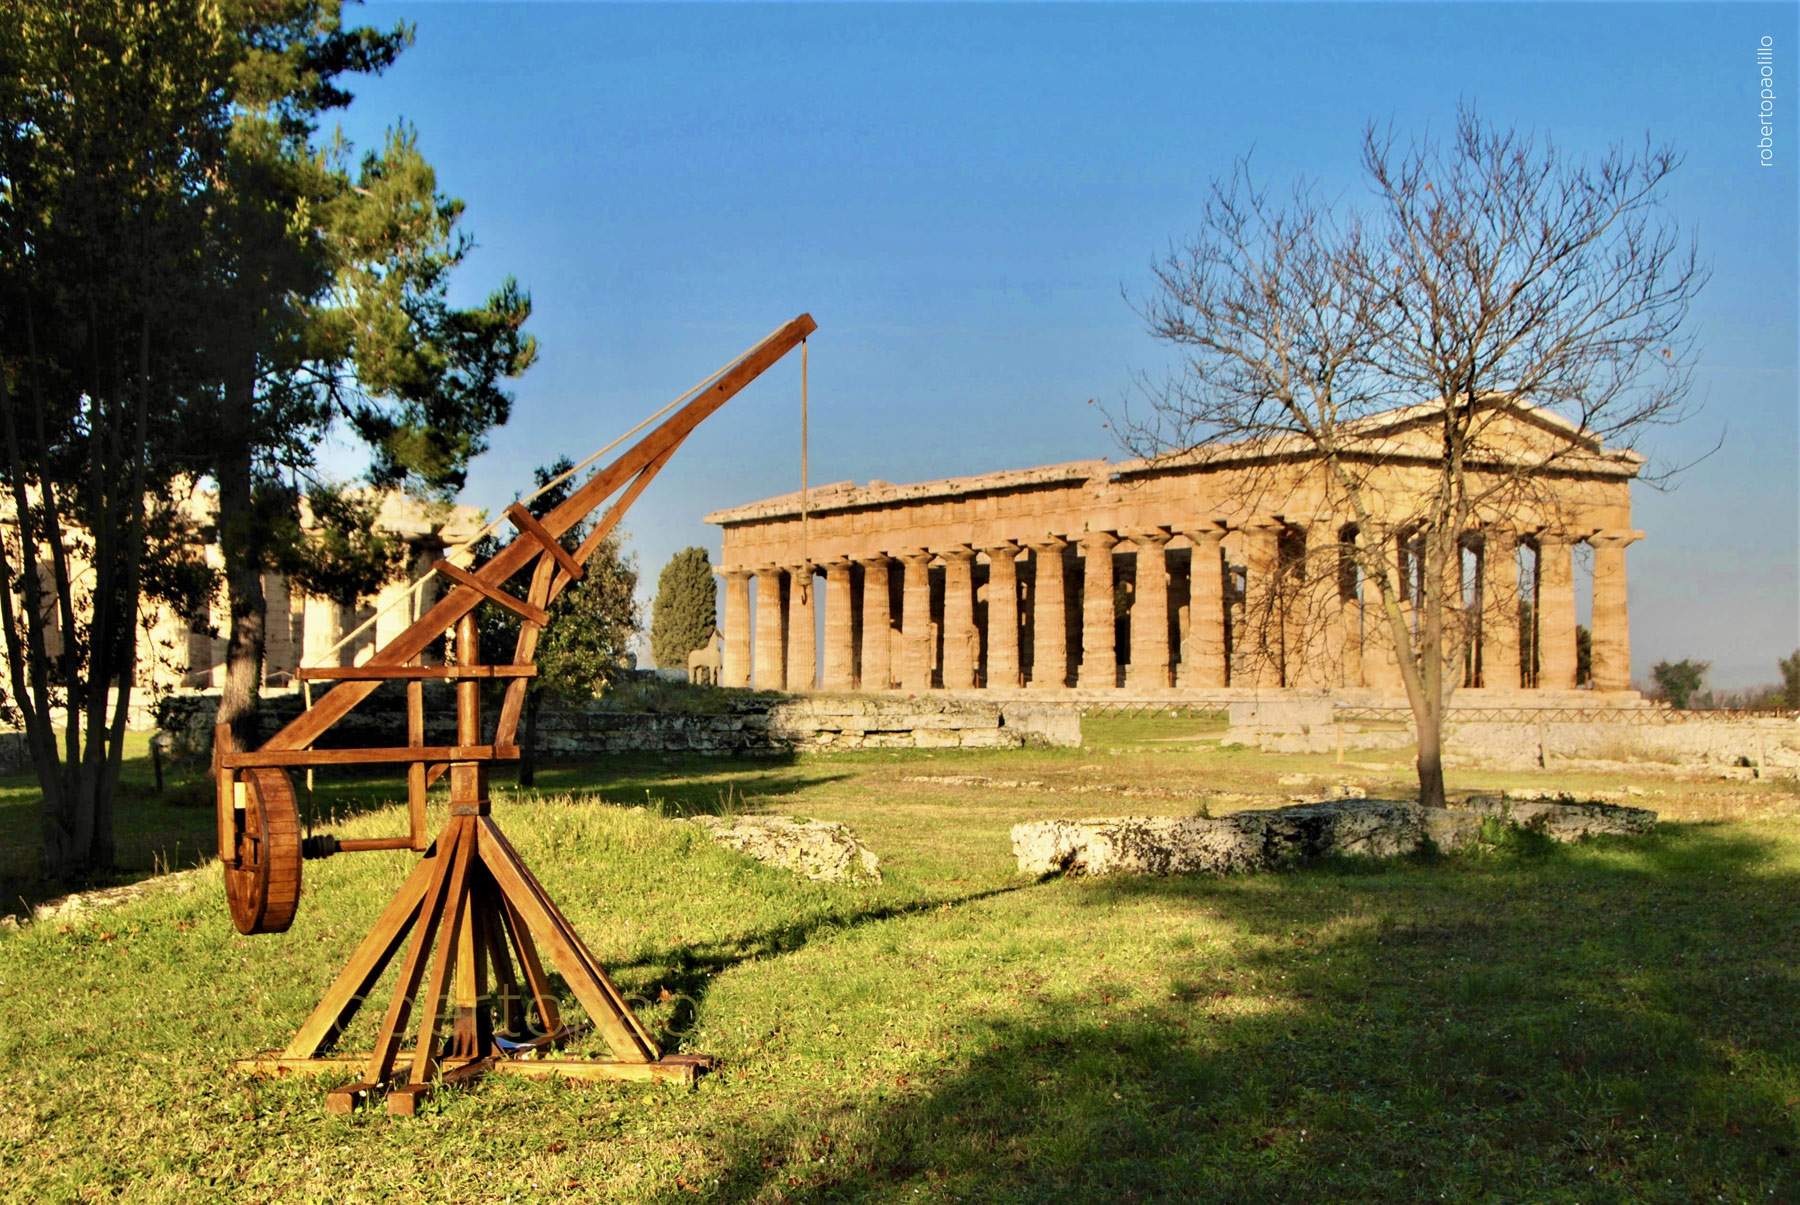 Le parc archéologique de Paestum voit la naissance du Parco dei Piccoli, une aire de jeux à thème archéologique située à proximité des temples. 